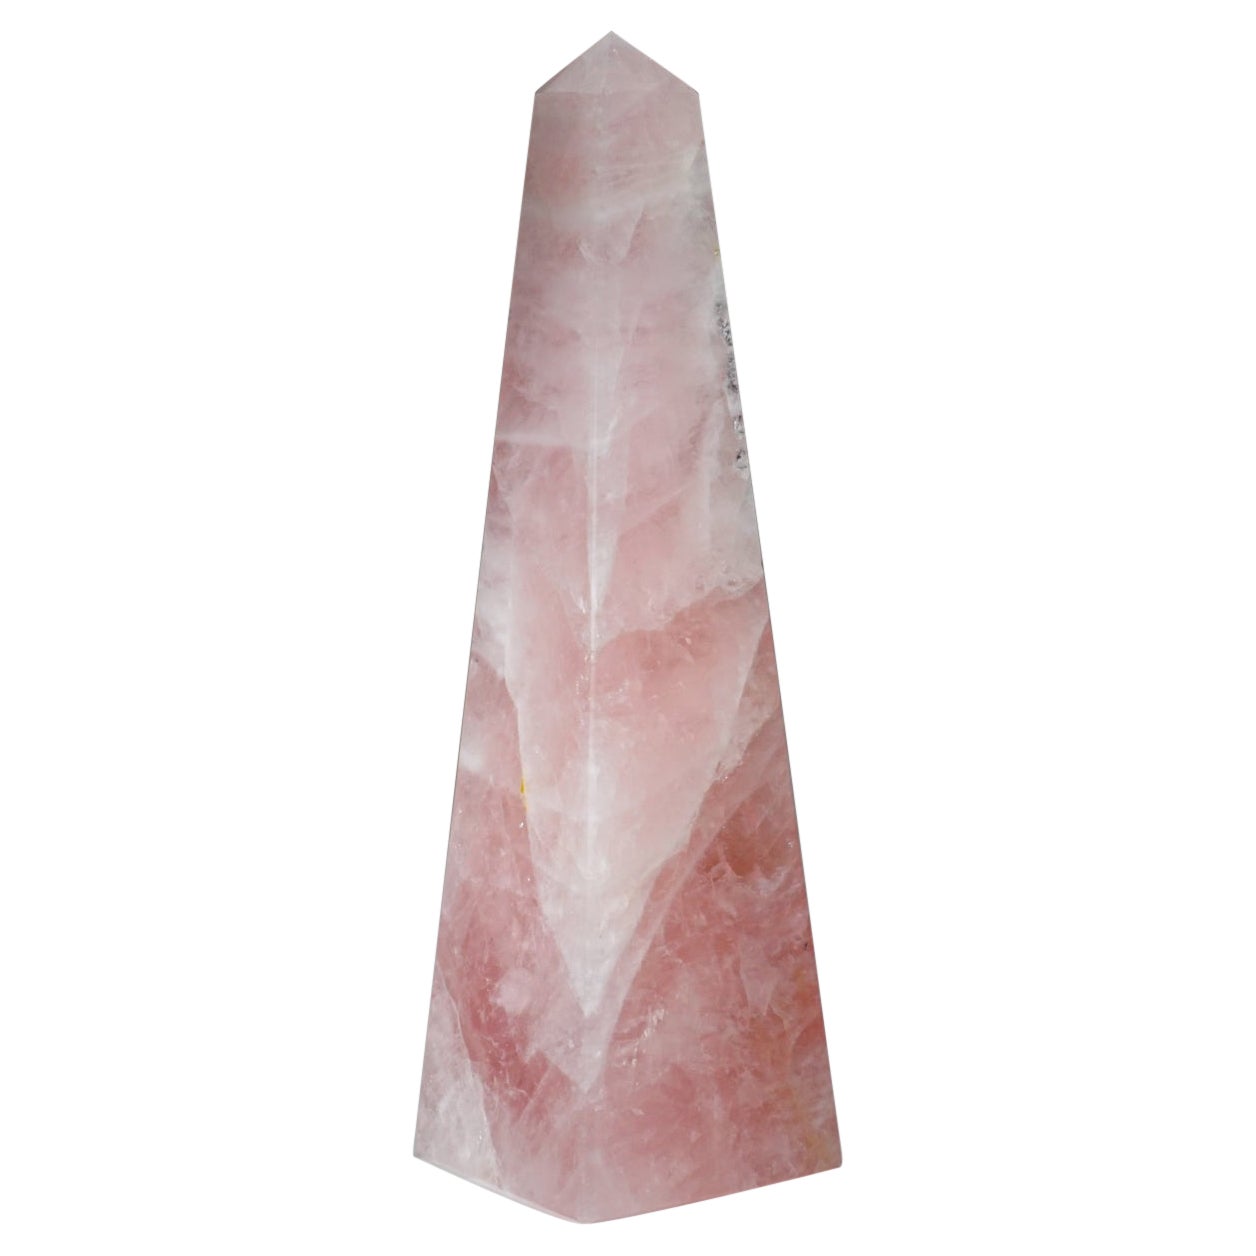 Polished Rose Quartz Obelisk from Brazil (3 lbs)